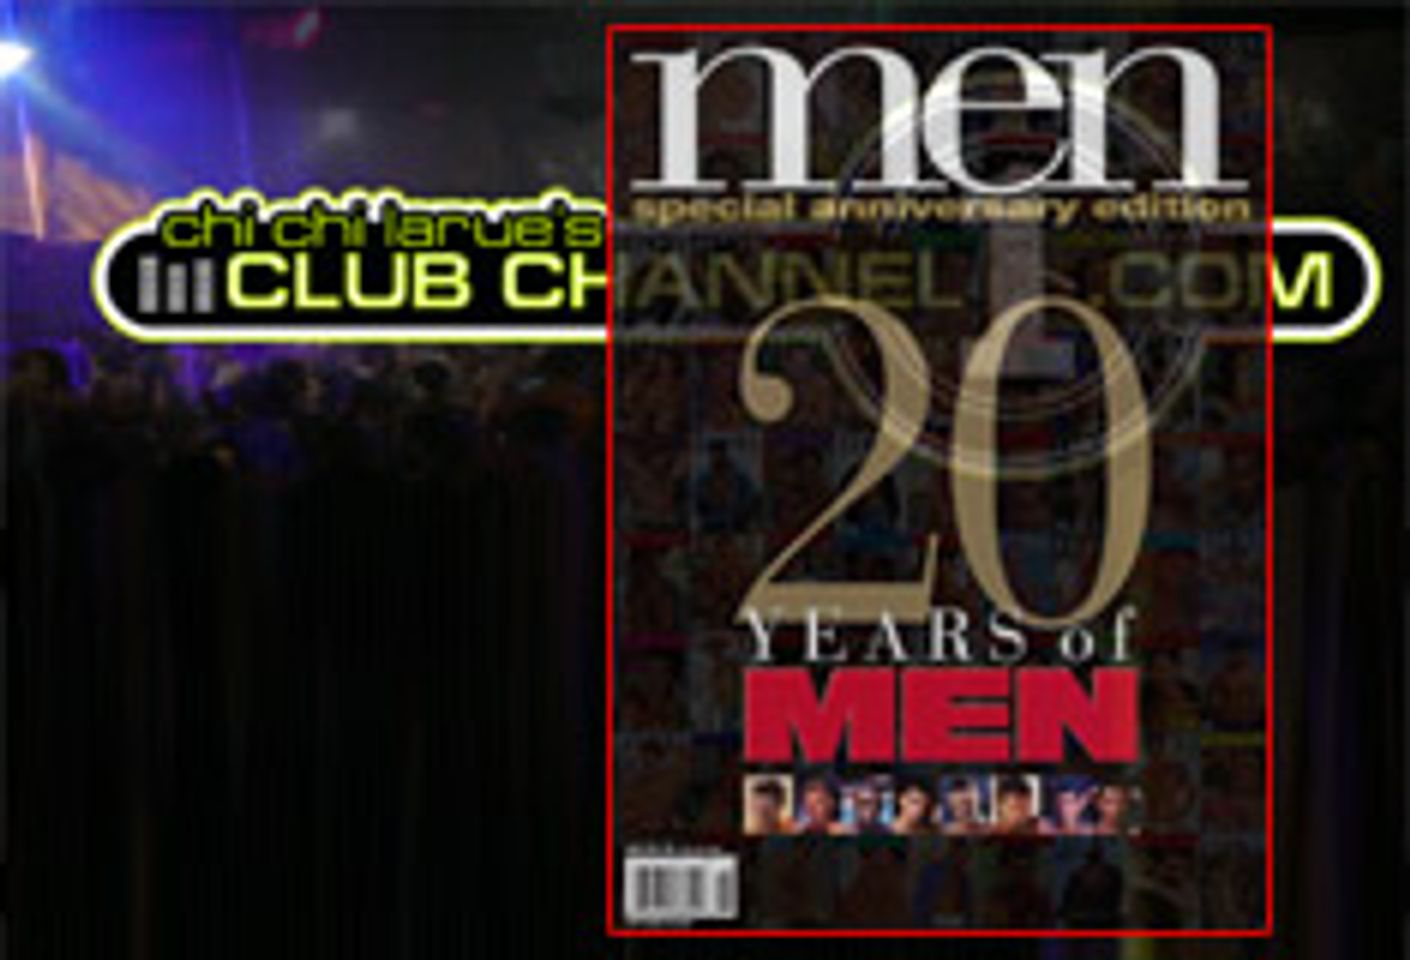 Club Channel 1 Celebrates 20th Anniversary Of Men Magazine